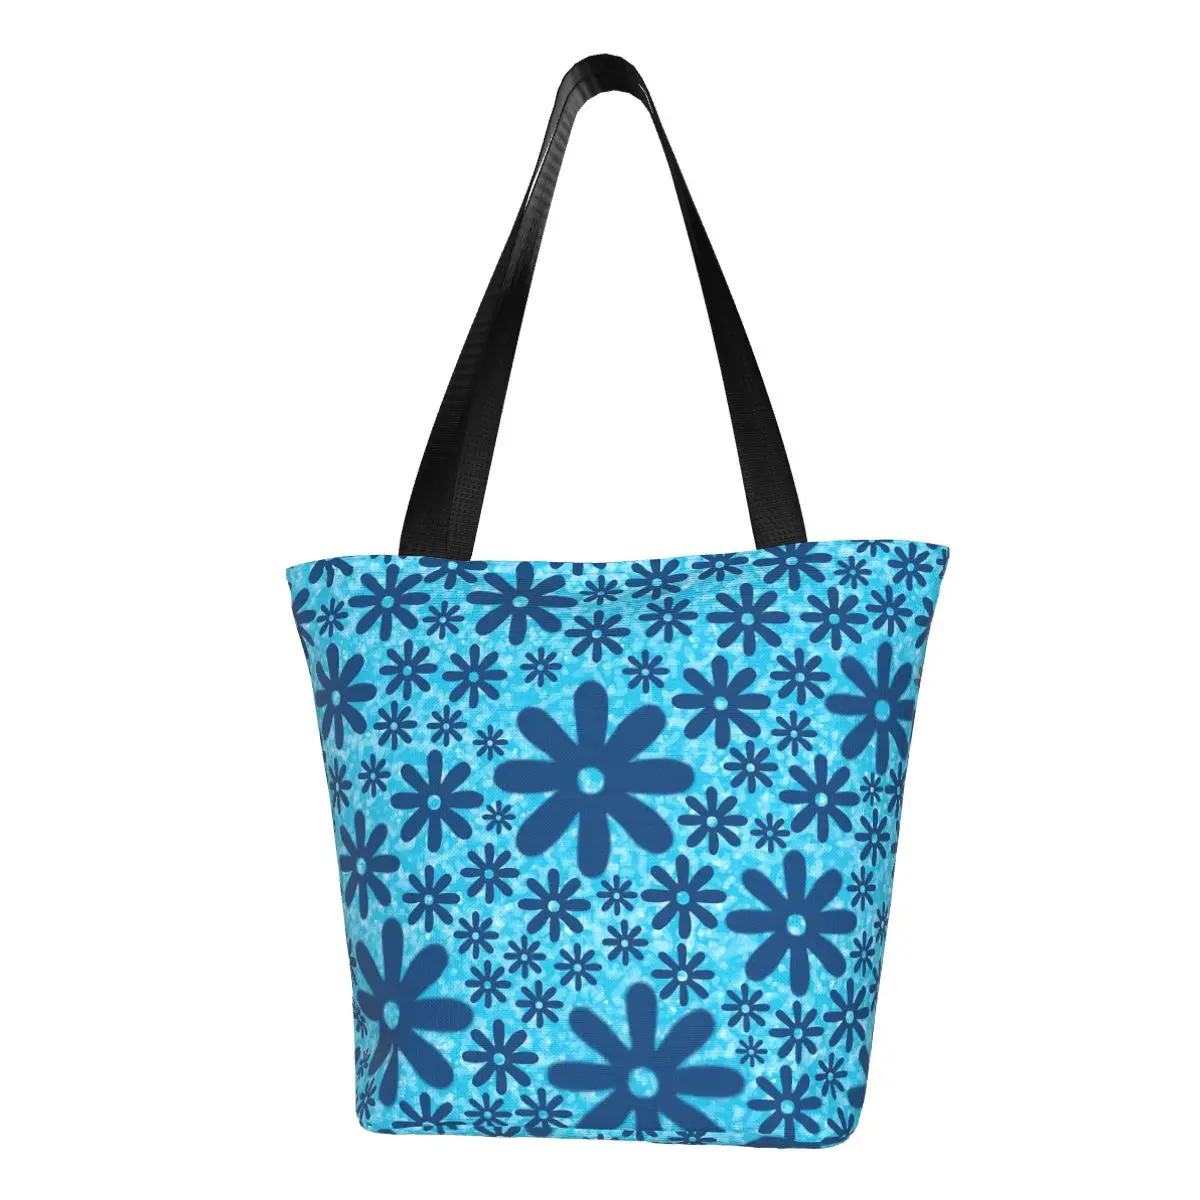 

Сумка-шоппер с голубым принтом маргариток, дамская сумочка-тоут в ретро стиле с цветами, Пляжная Сумочка на плечо из полиэстера с графическим дизайном